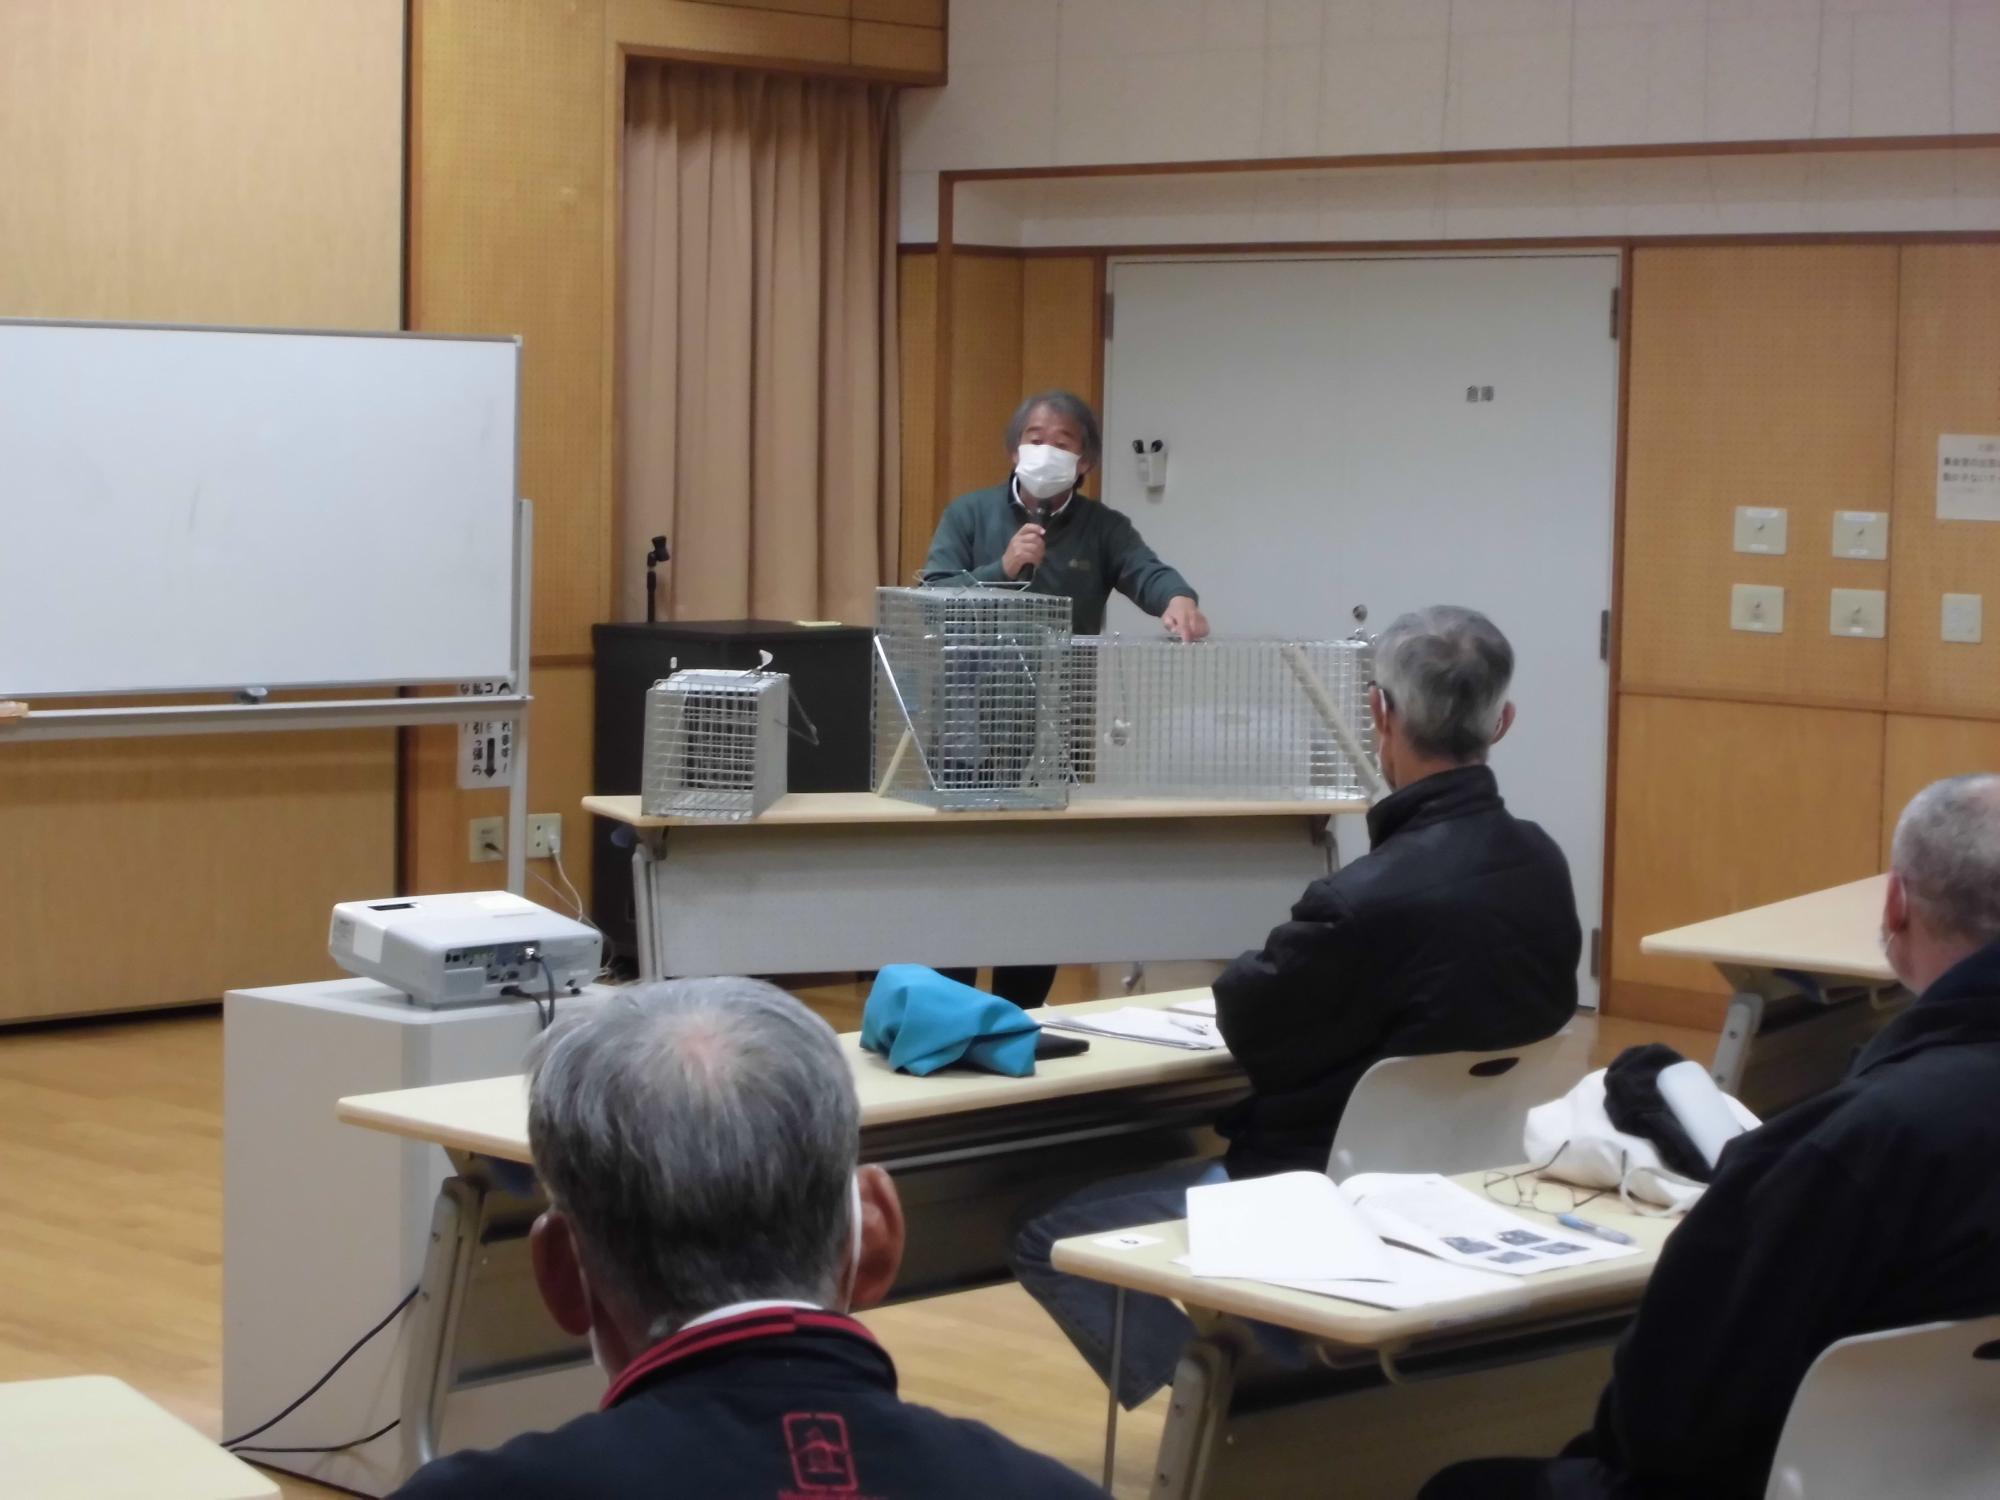 アライグマ捕獲従事者養成研修会の参加者たちが講師の話を聞いている様子の写真